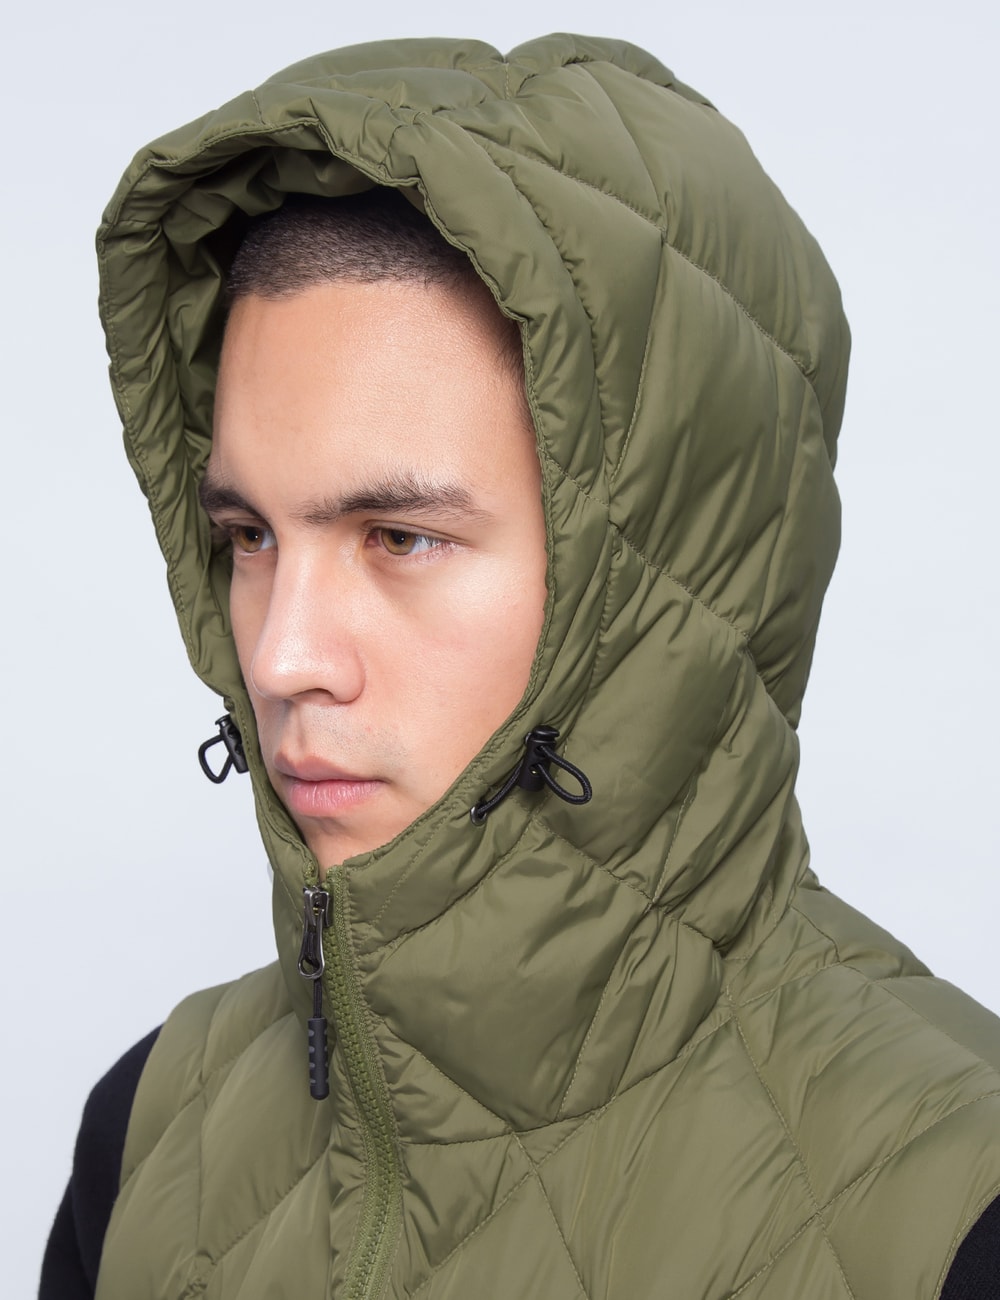 Mt.Rainier Design - Zip Up Quilt Hood Vest | HBX